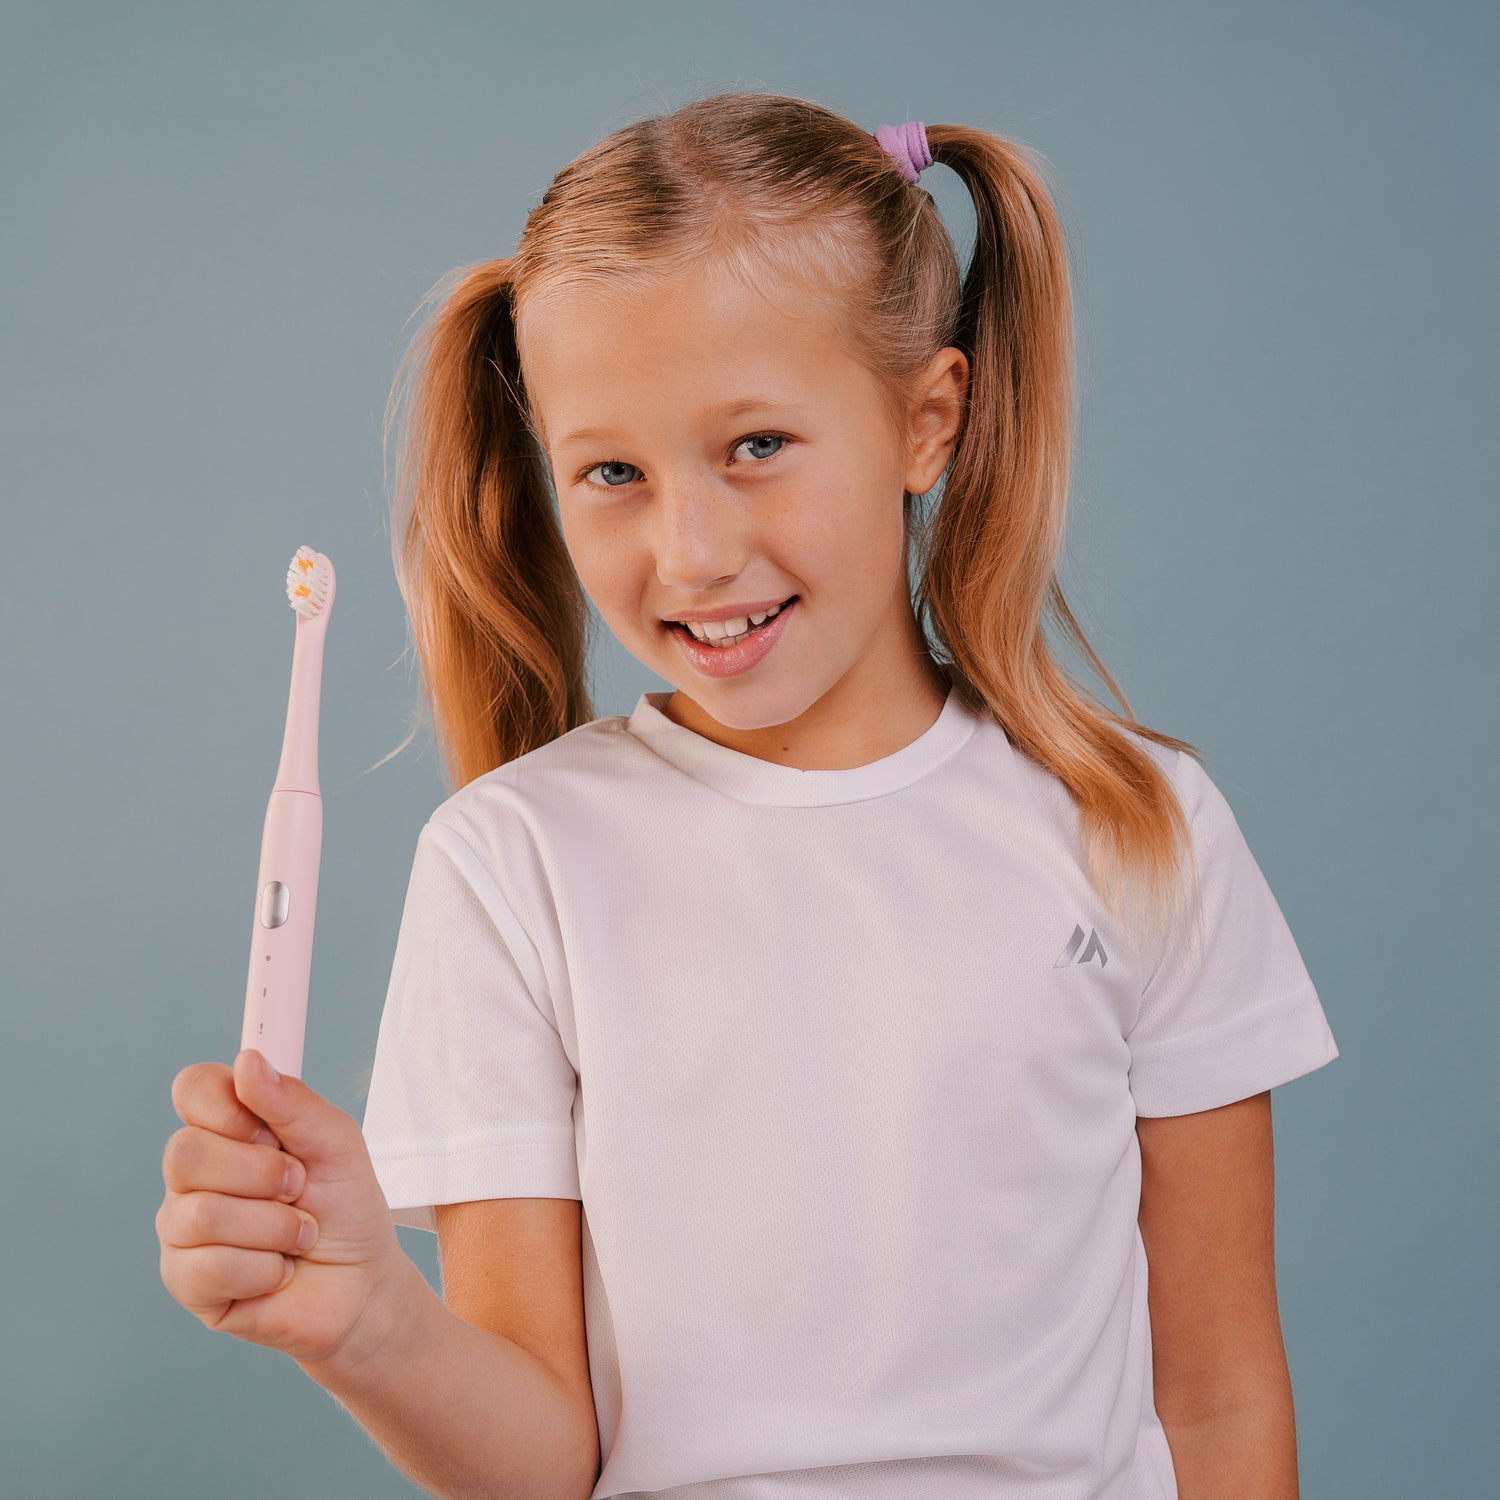 НАБОР электрическая зубная щетка Smiley Light Pink розовая + стерилизатор  купить электрощетку купить зубную электрощетку купить электронную зубную щетку купити електричну зубну щітку електрична зубна щітка купити